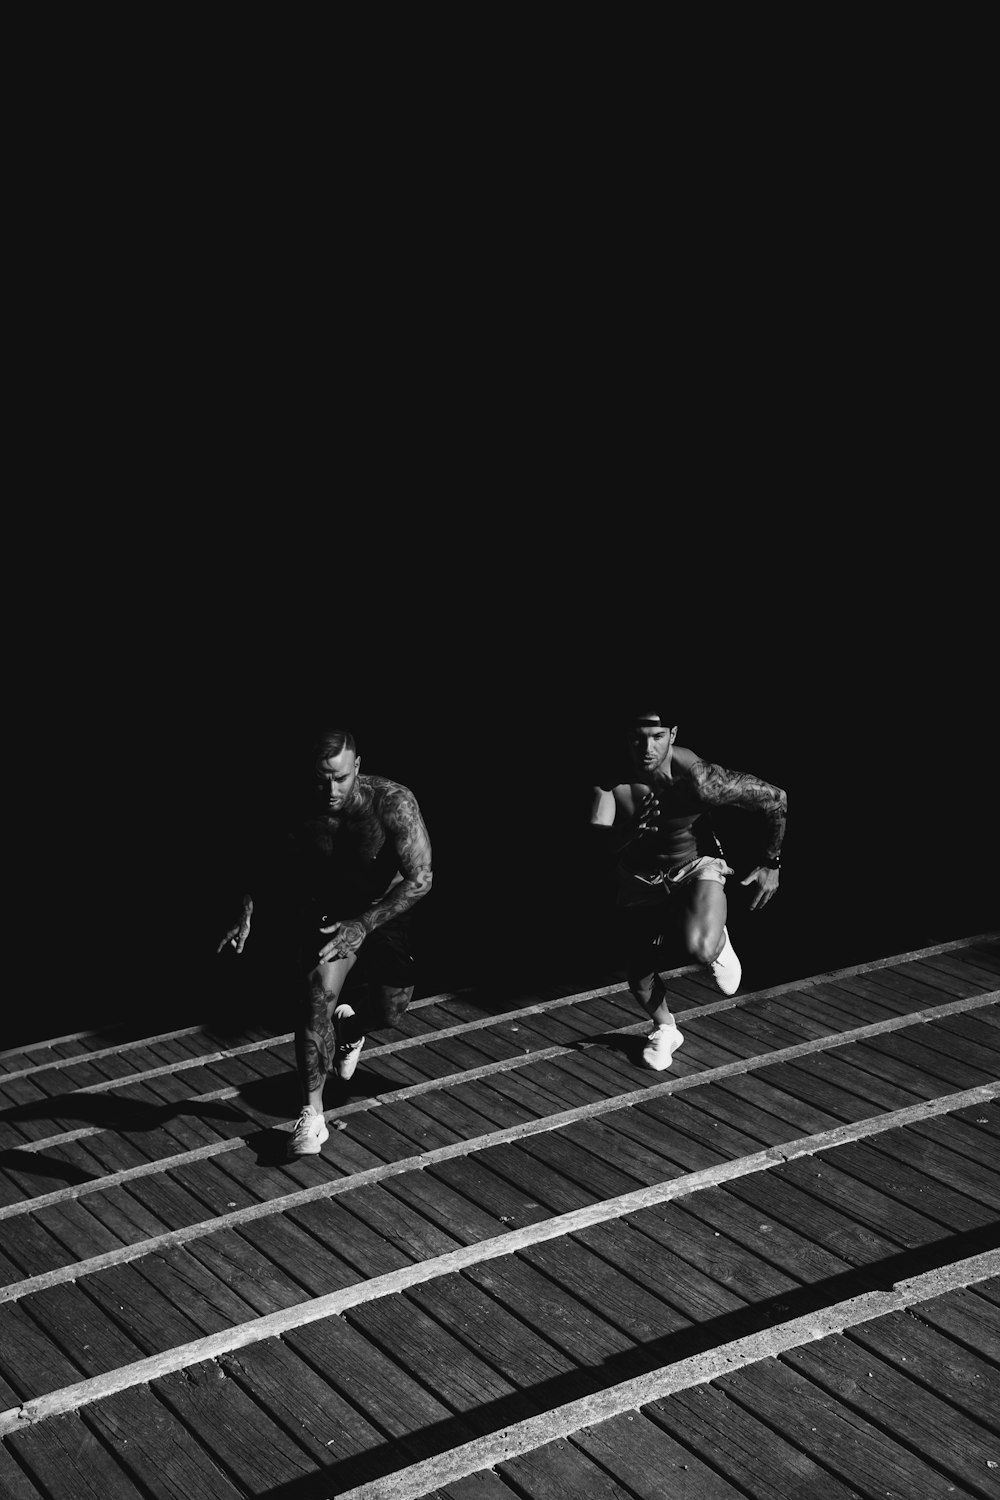 2人の男性が互いにレースをしているグレースケール写真